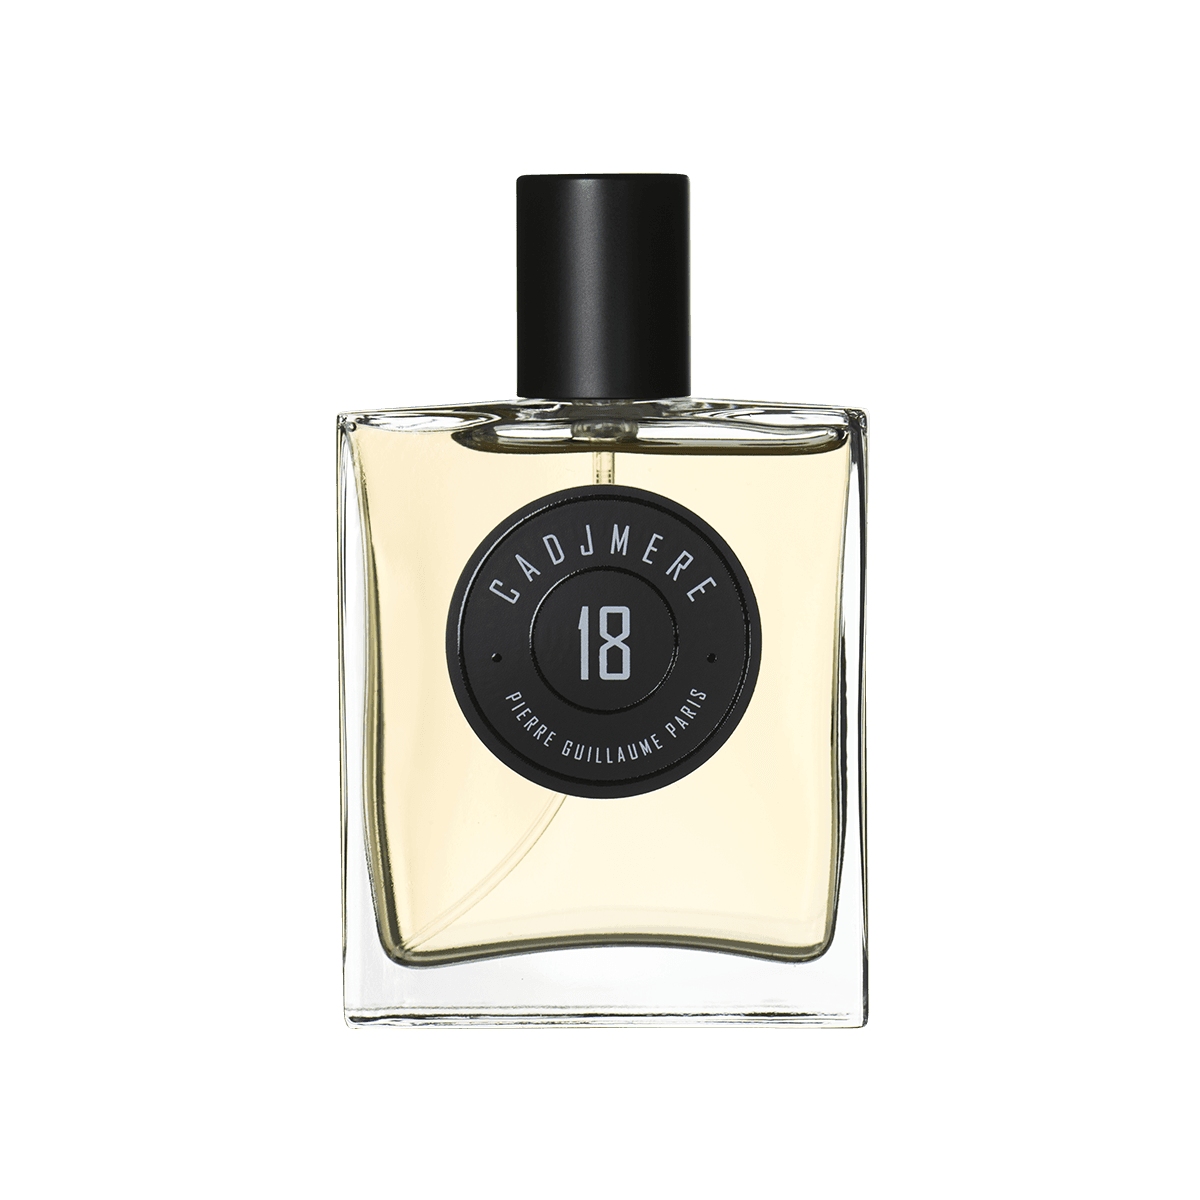 Pierre Guillaume Paris - 18 Cadjmere eau de parfum 50 ml | Perfume Lounge